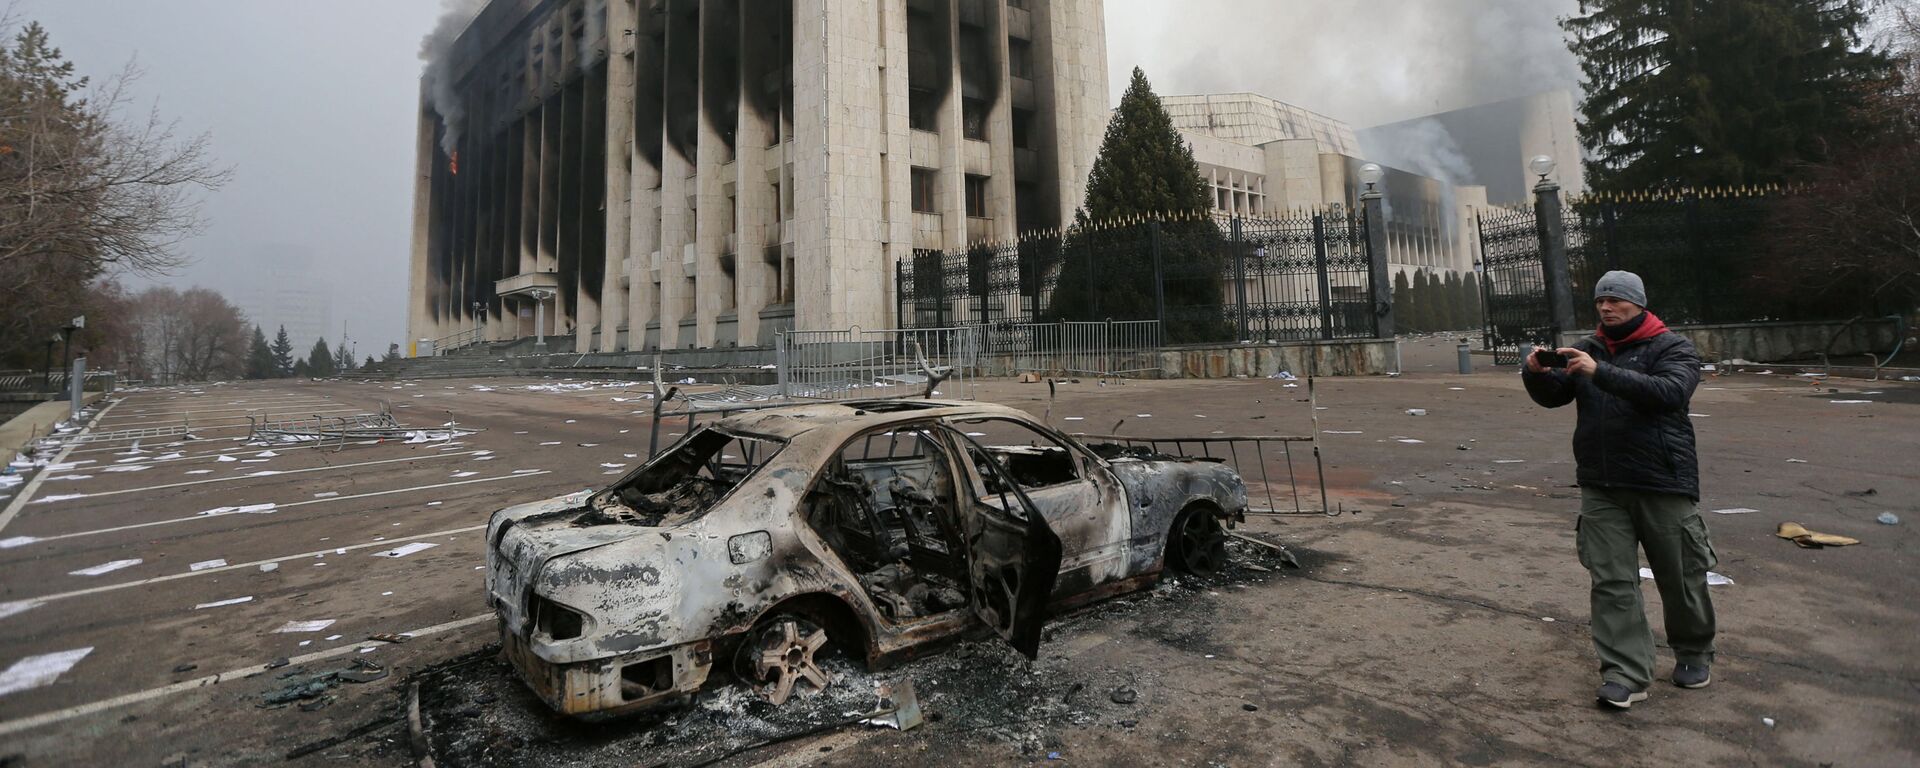 Сгоревший автомобиль перед зданием мэрии, которое было подожжено во время протестов в Алматы - Sputnik Таджикистан, 1920, 08.01.2022